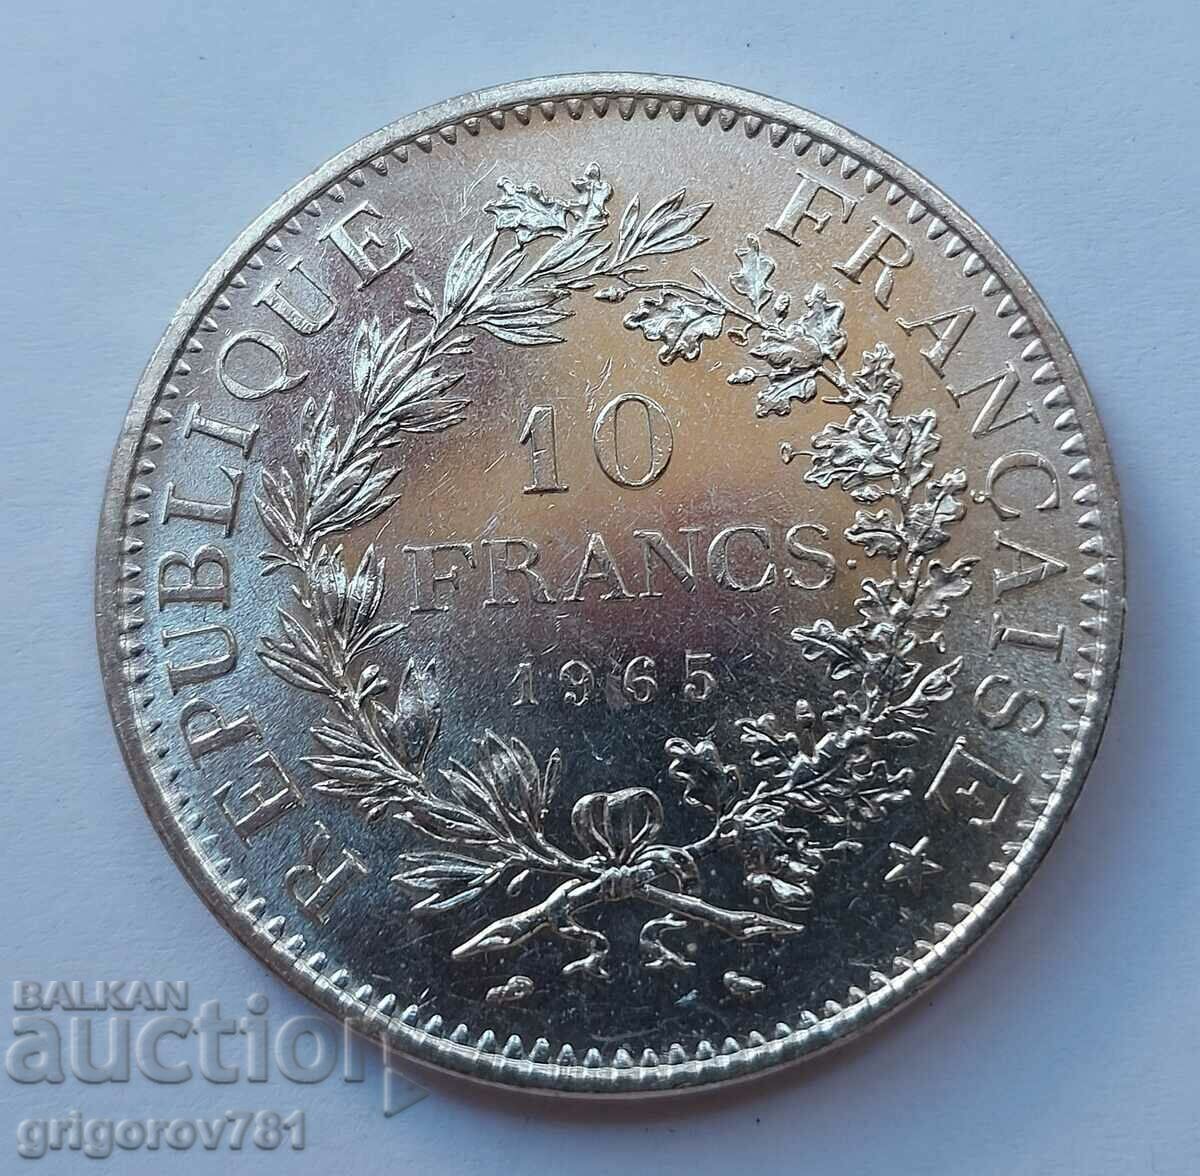 10 Φράγκα Ασήμι Γαλλία 1965 - Ασημένιο νόμισμα #10